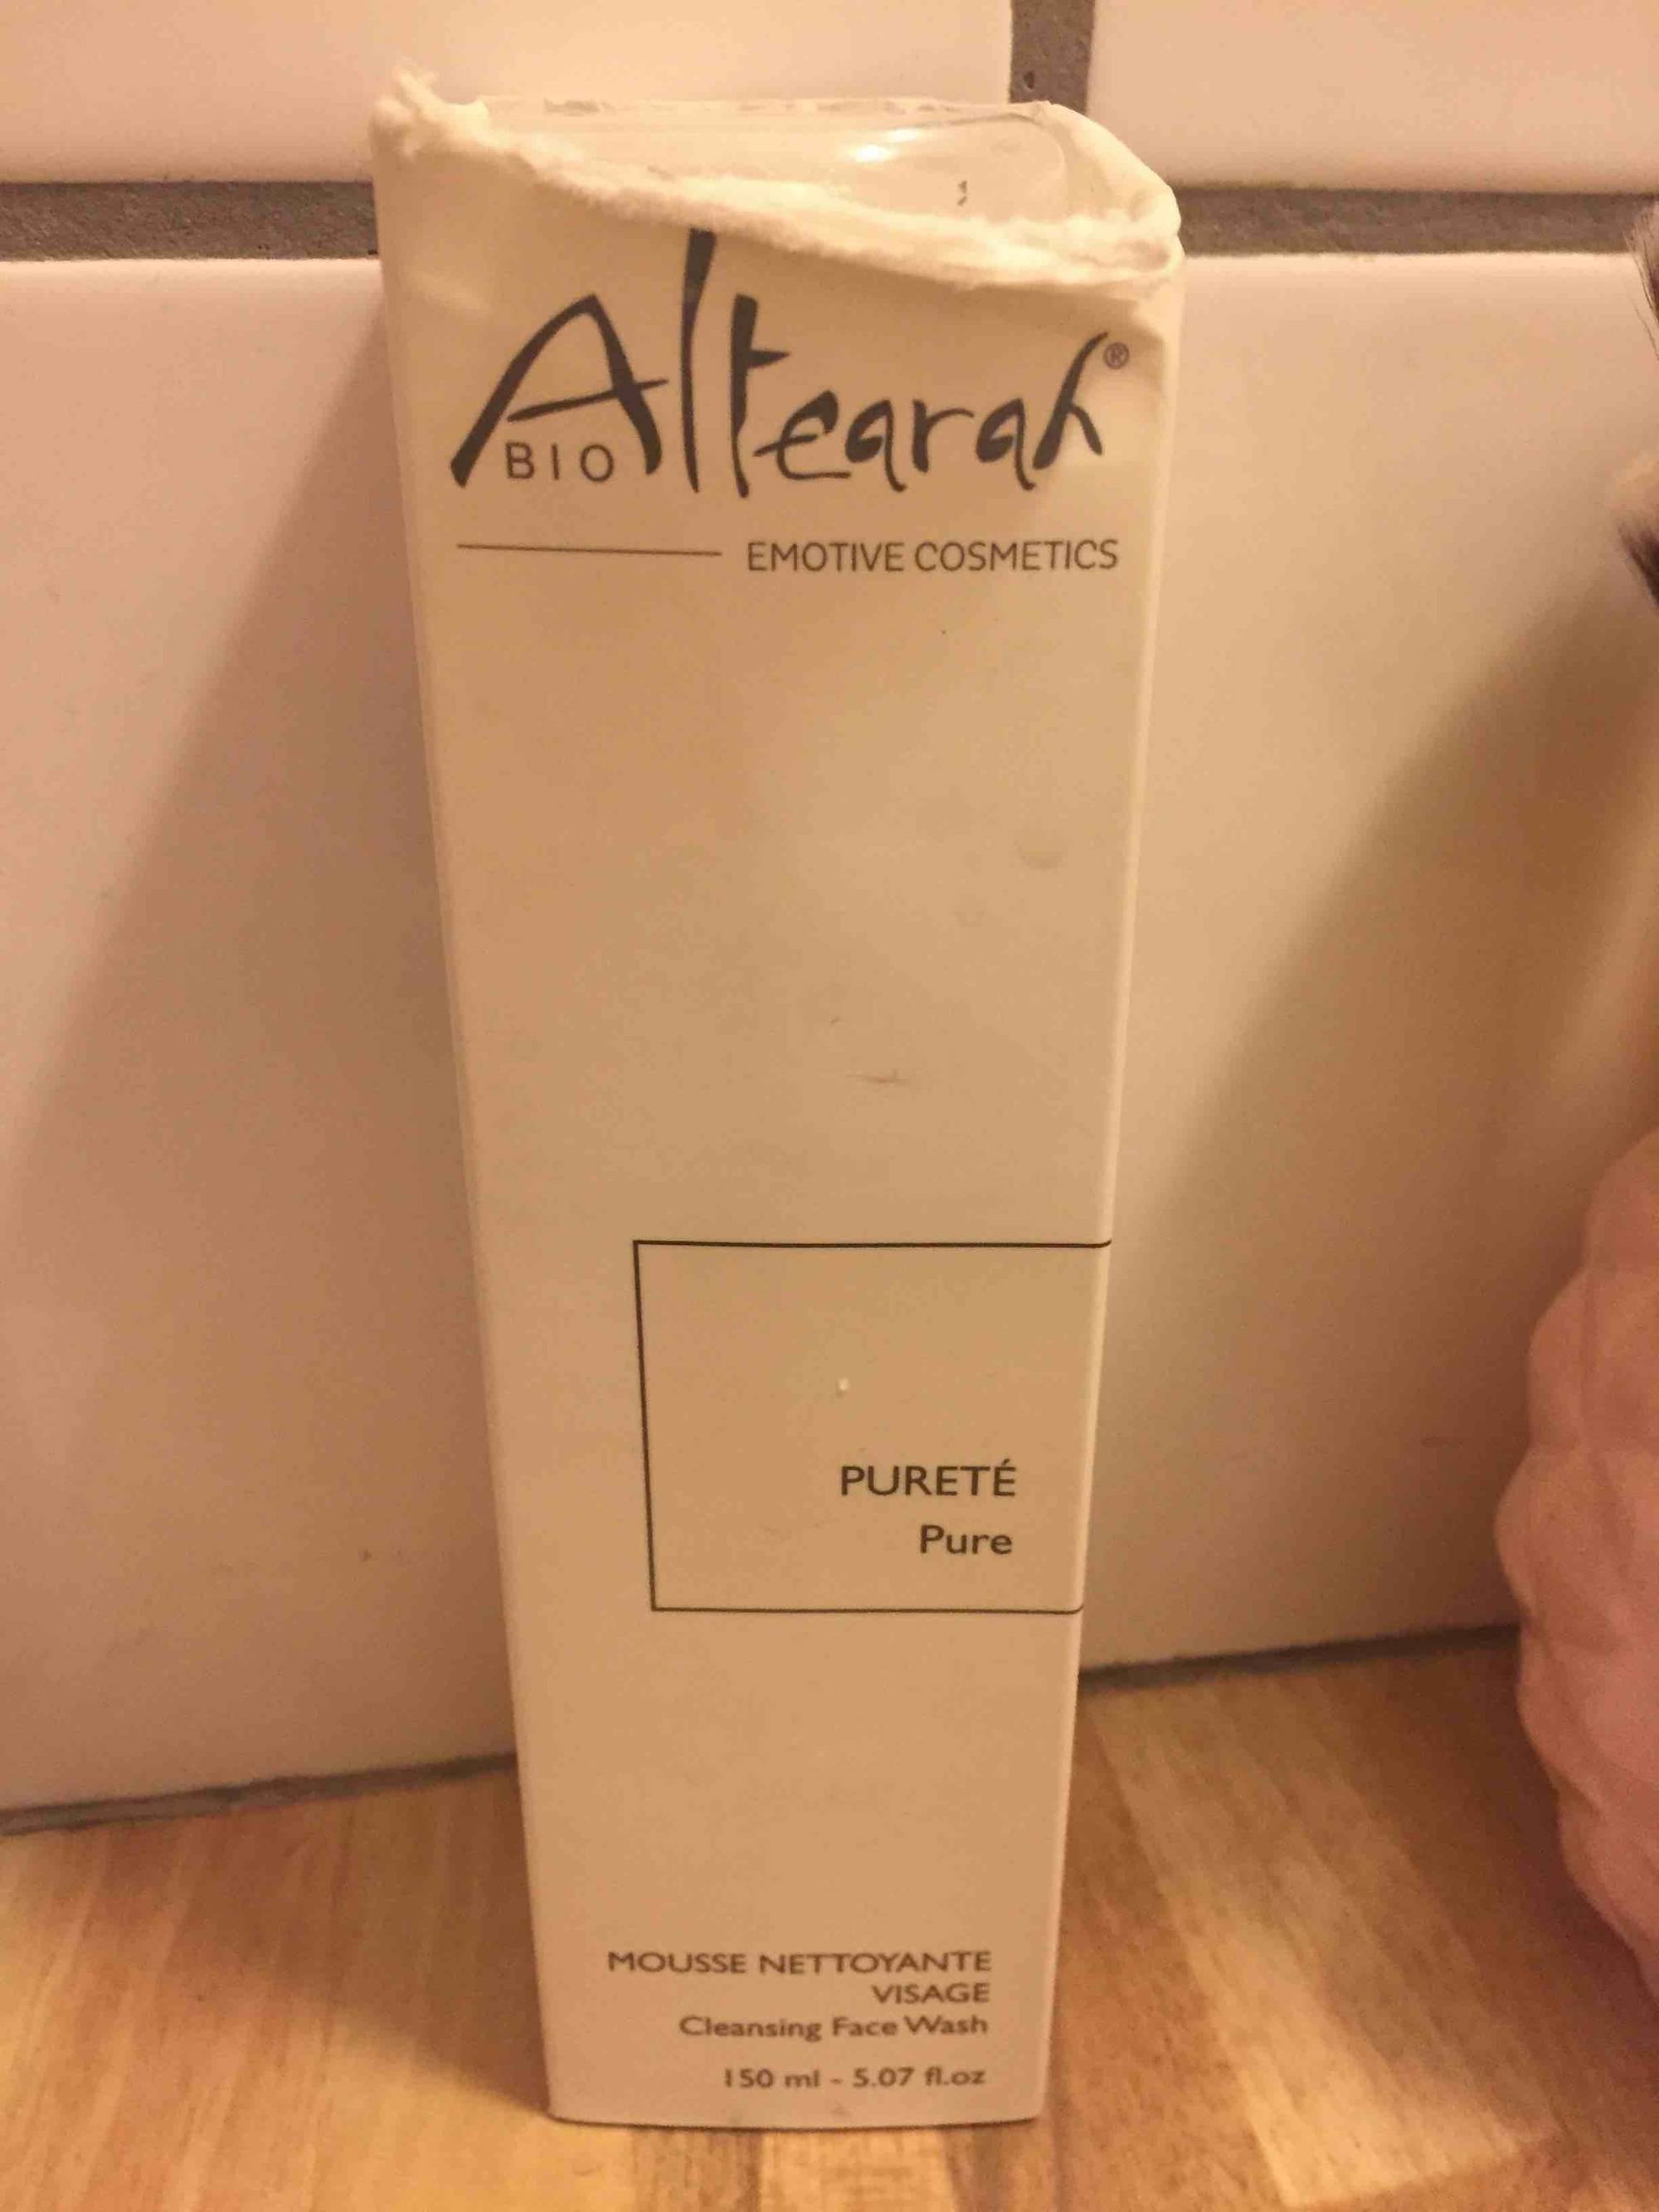 ALTEARAH - Pureté - Mousse nettoyante visage